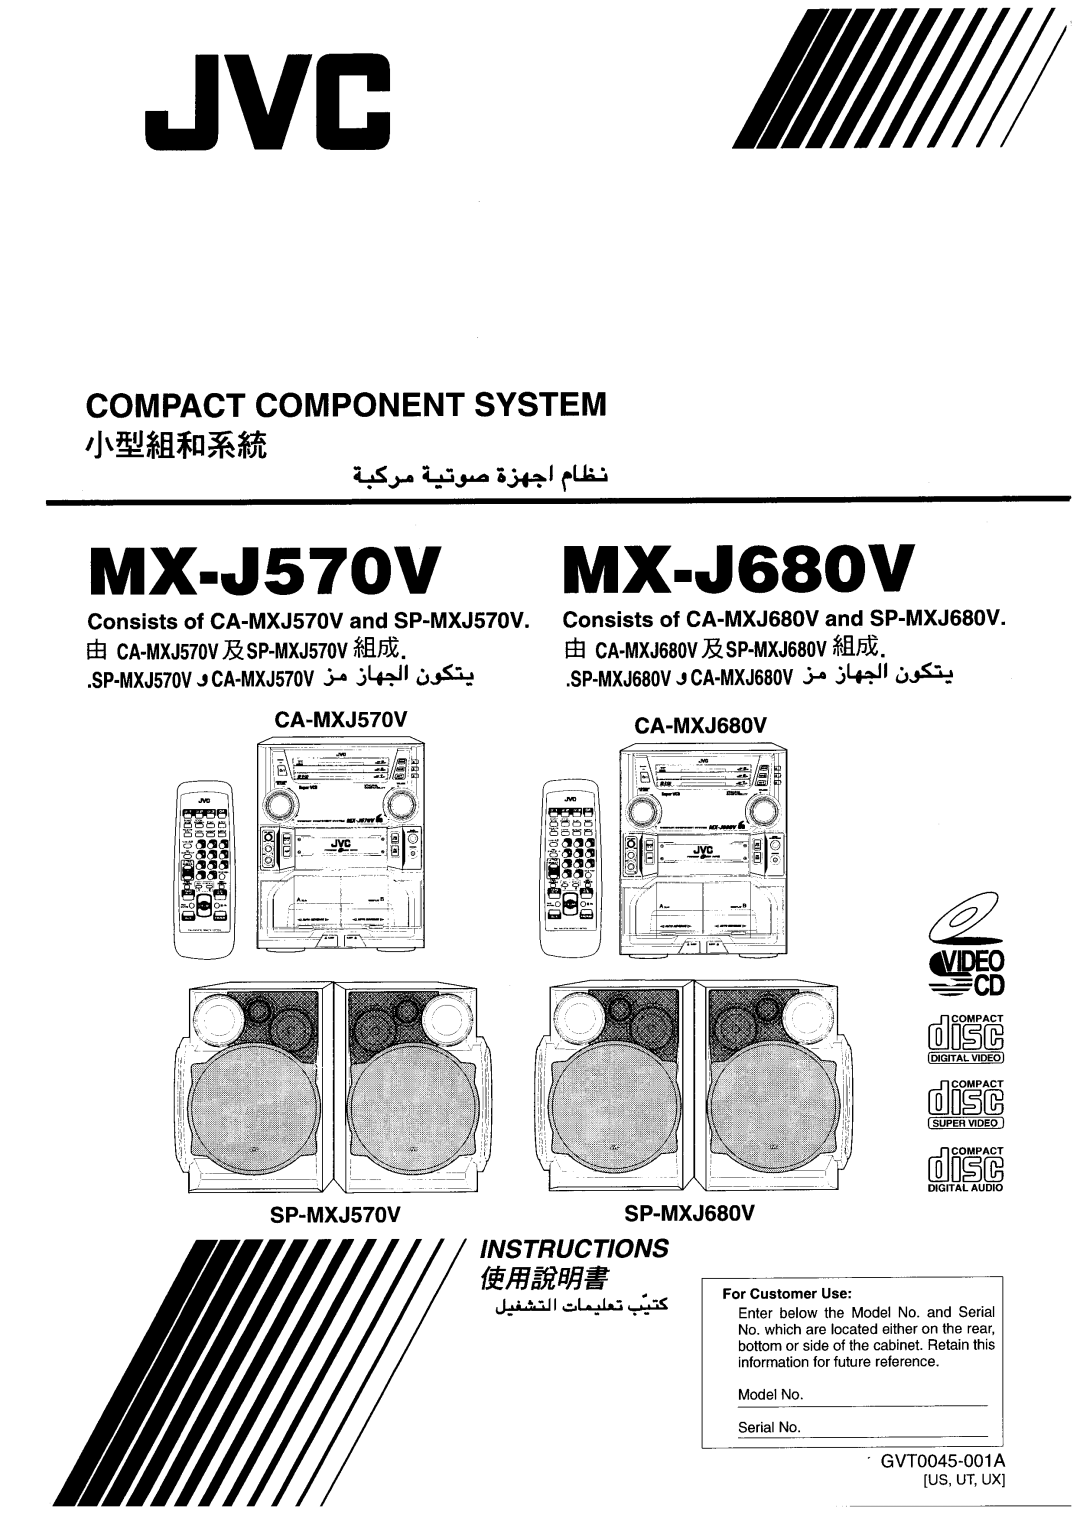 JVC MX-J680V, MX-J570V manual 